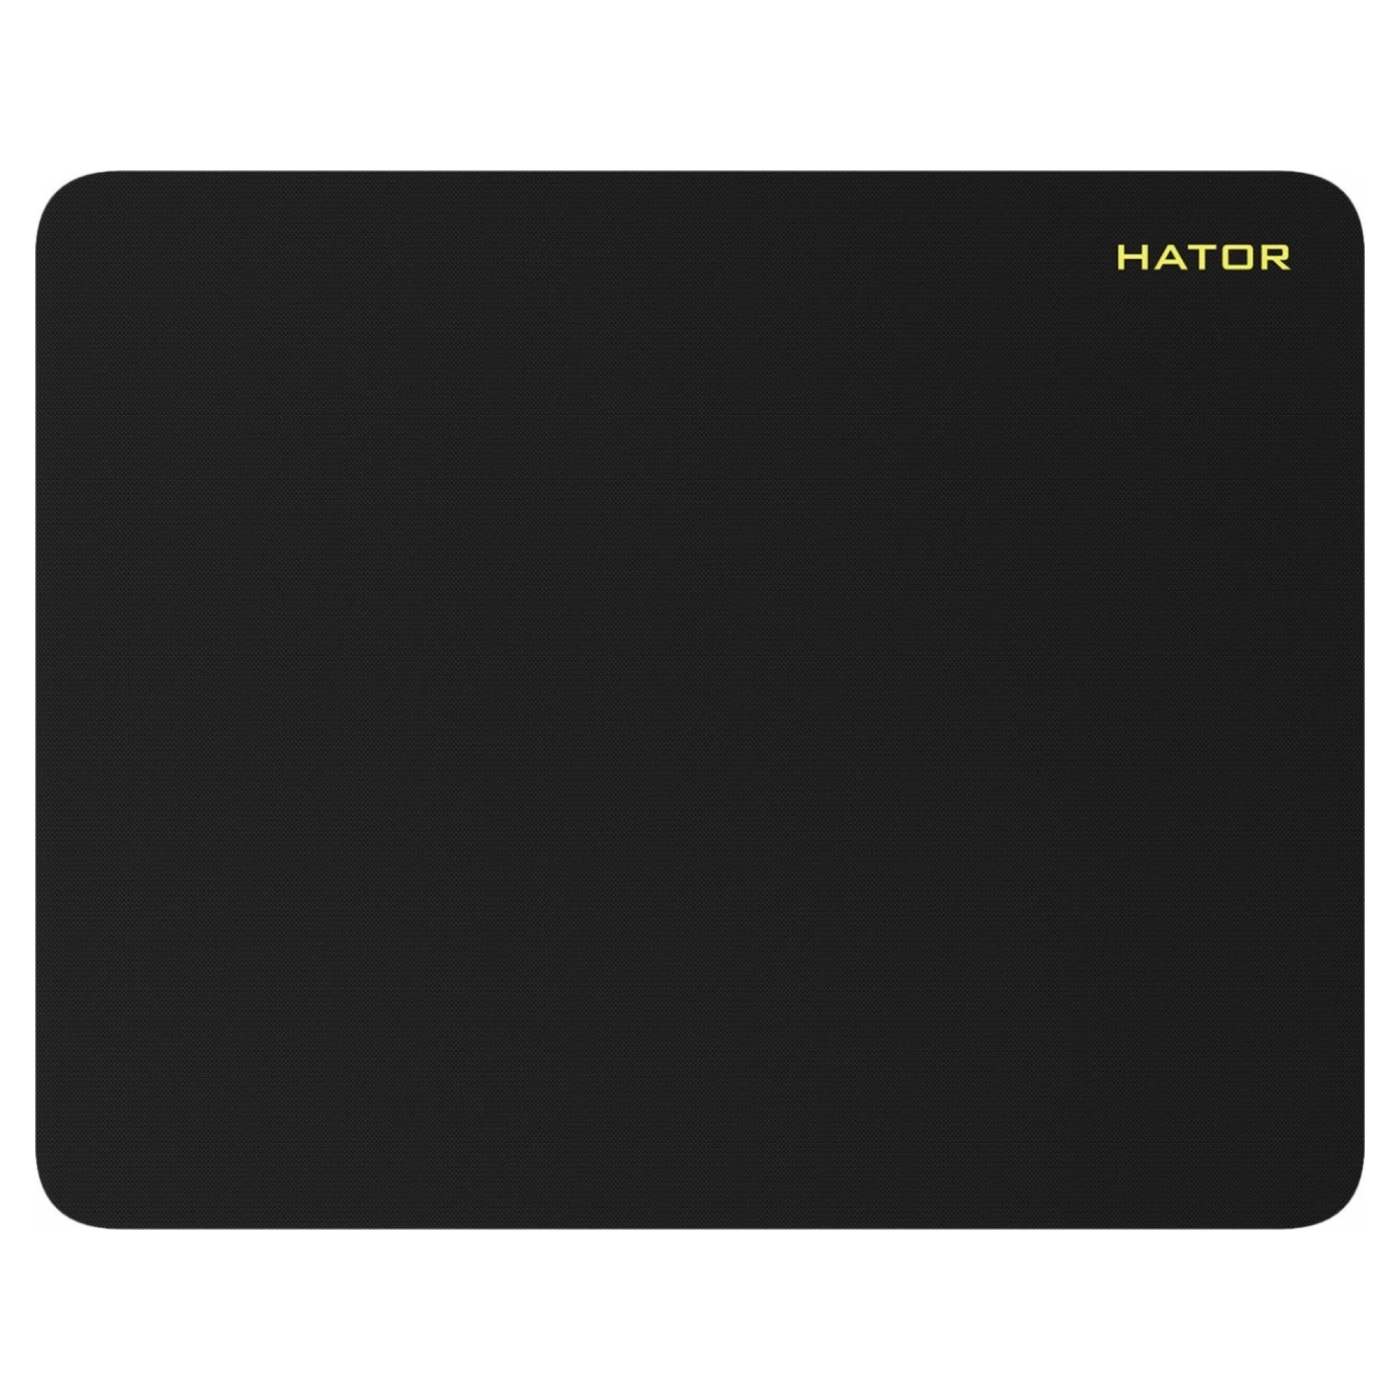 Купить Игровая поверхность HATOR Tonn Mobile Black (HTP-1000) - фото 1